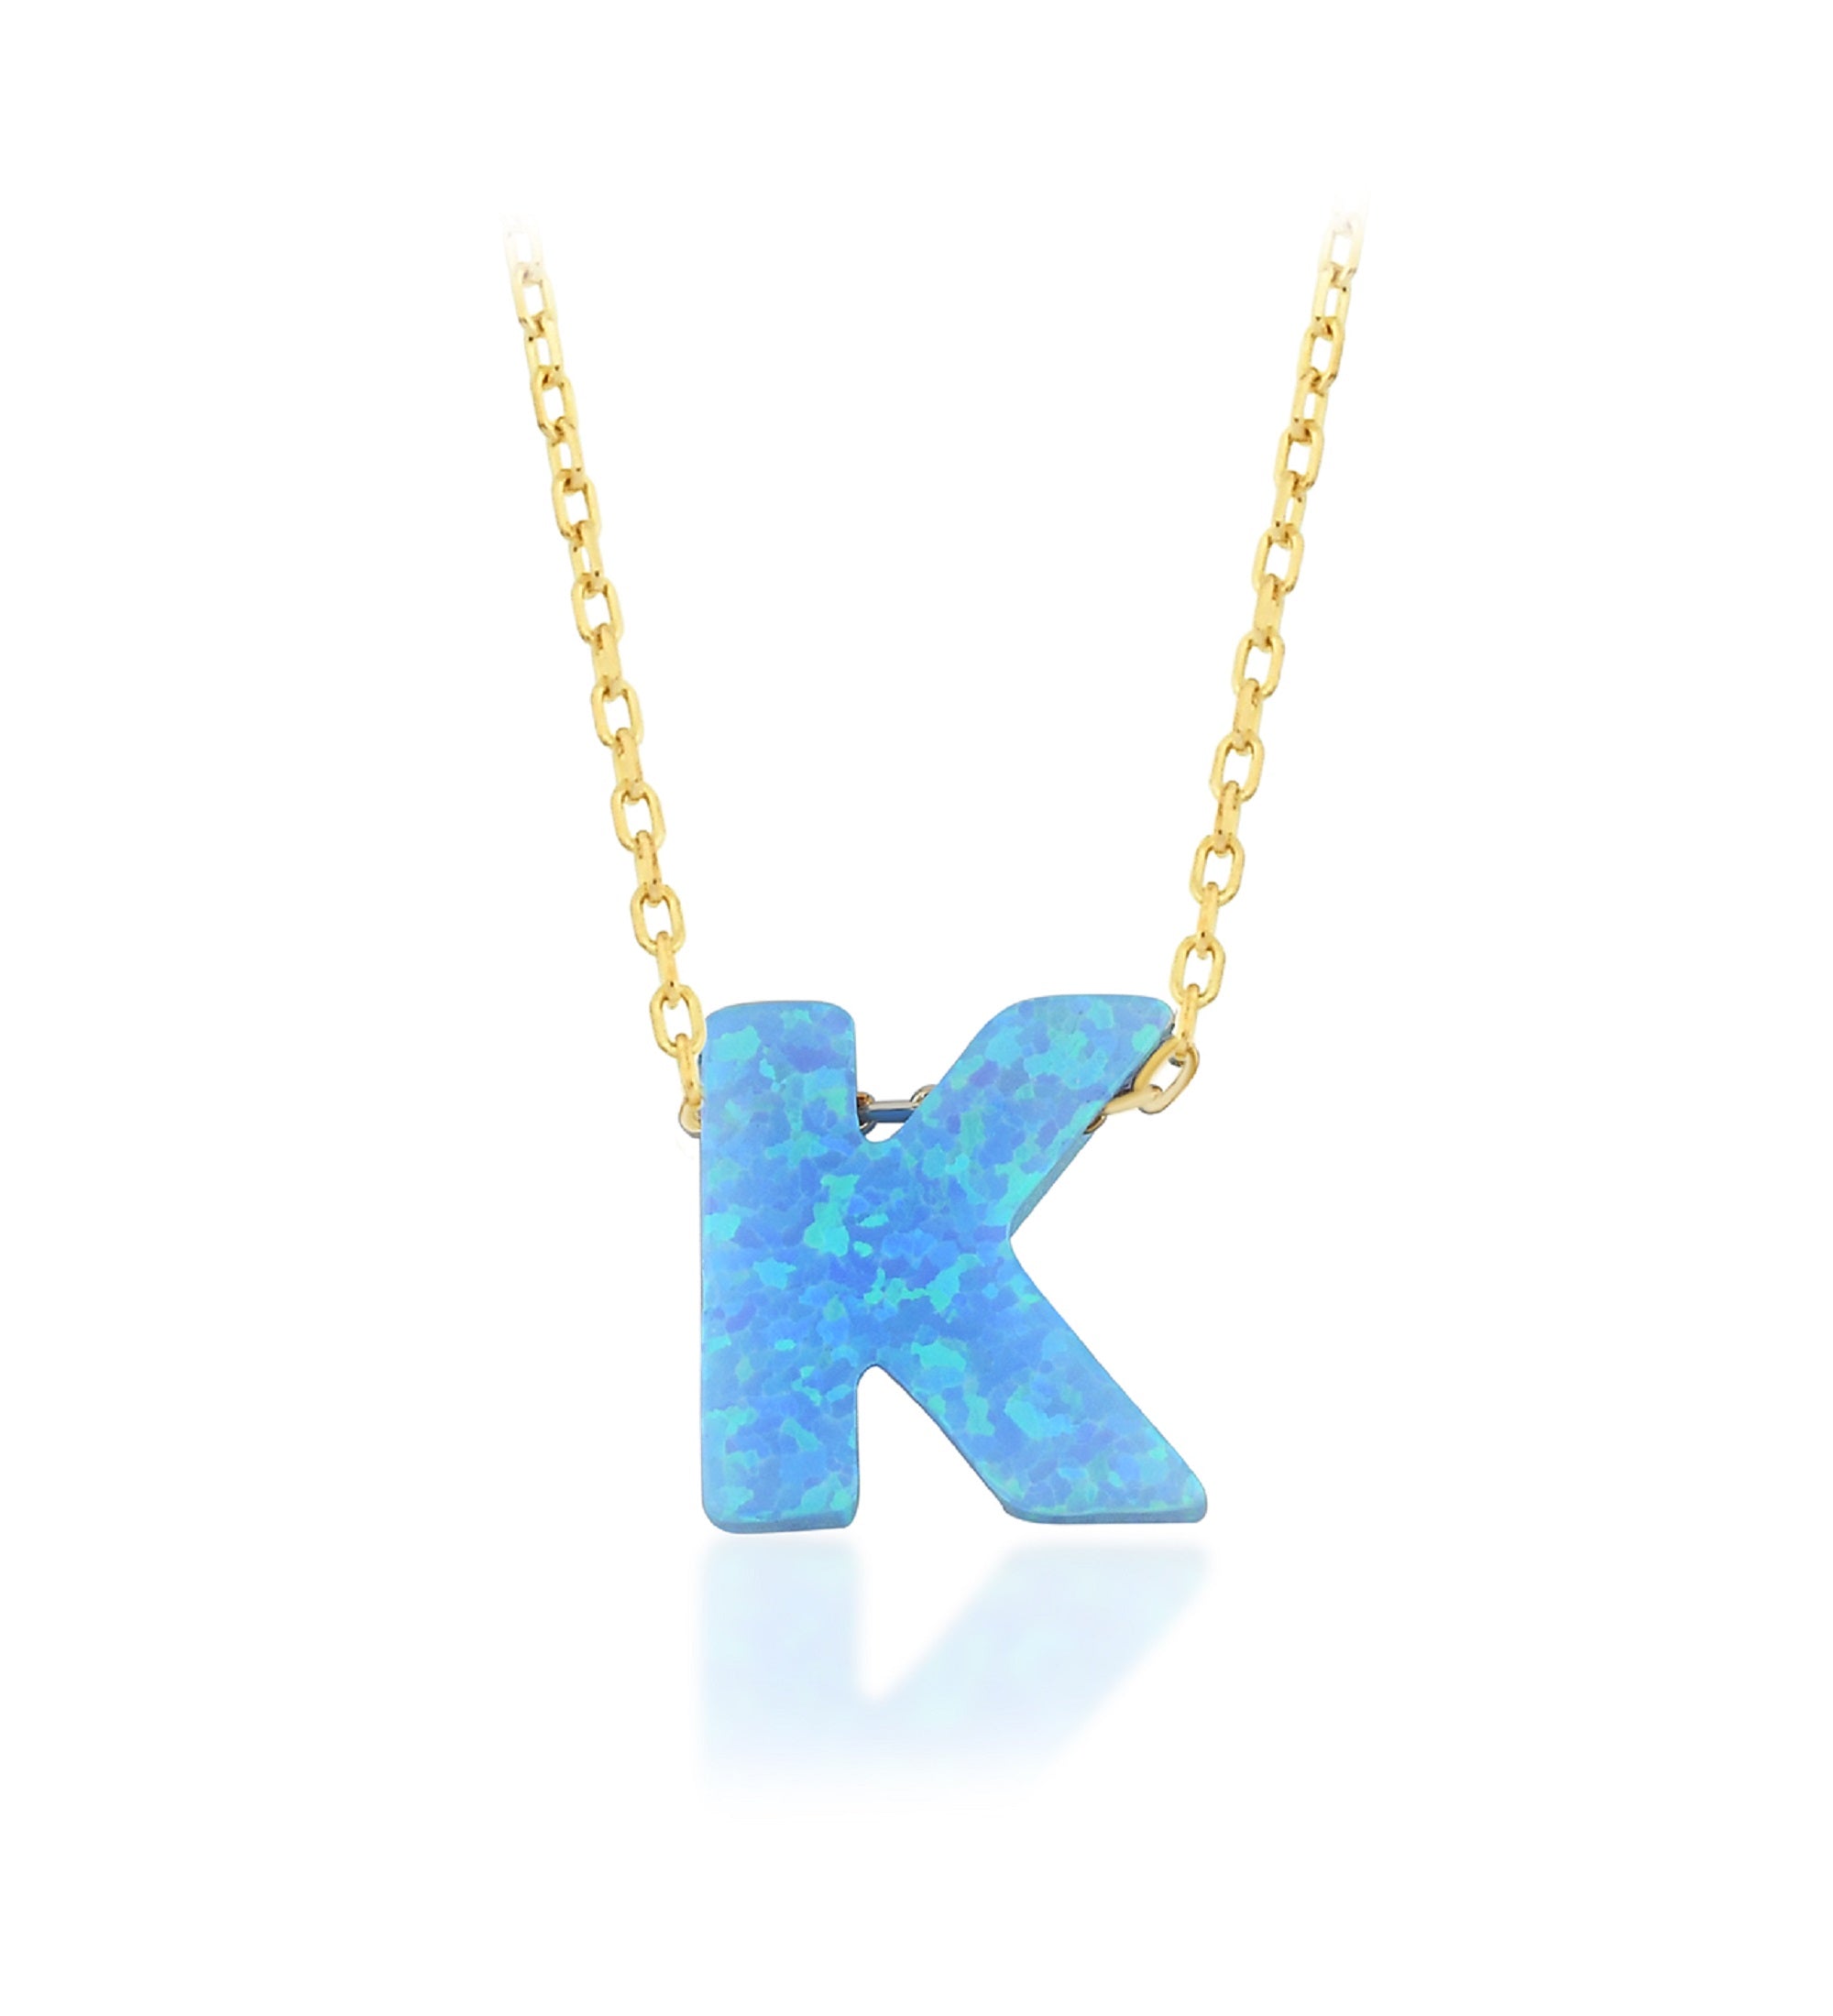 Blue Opal Initial Necklace - "K" letter pendant